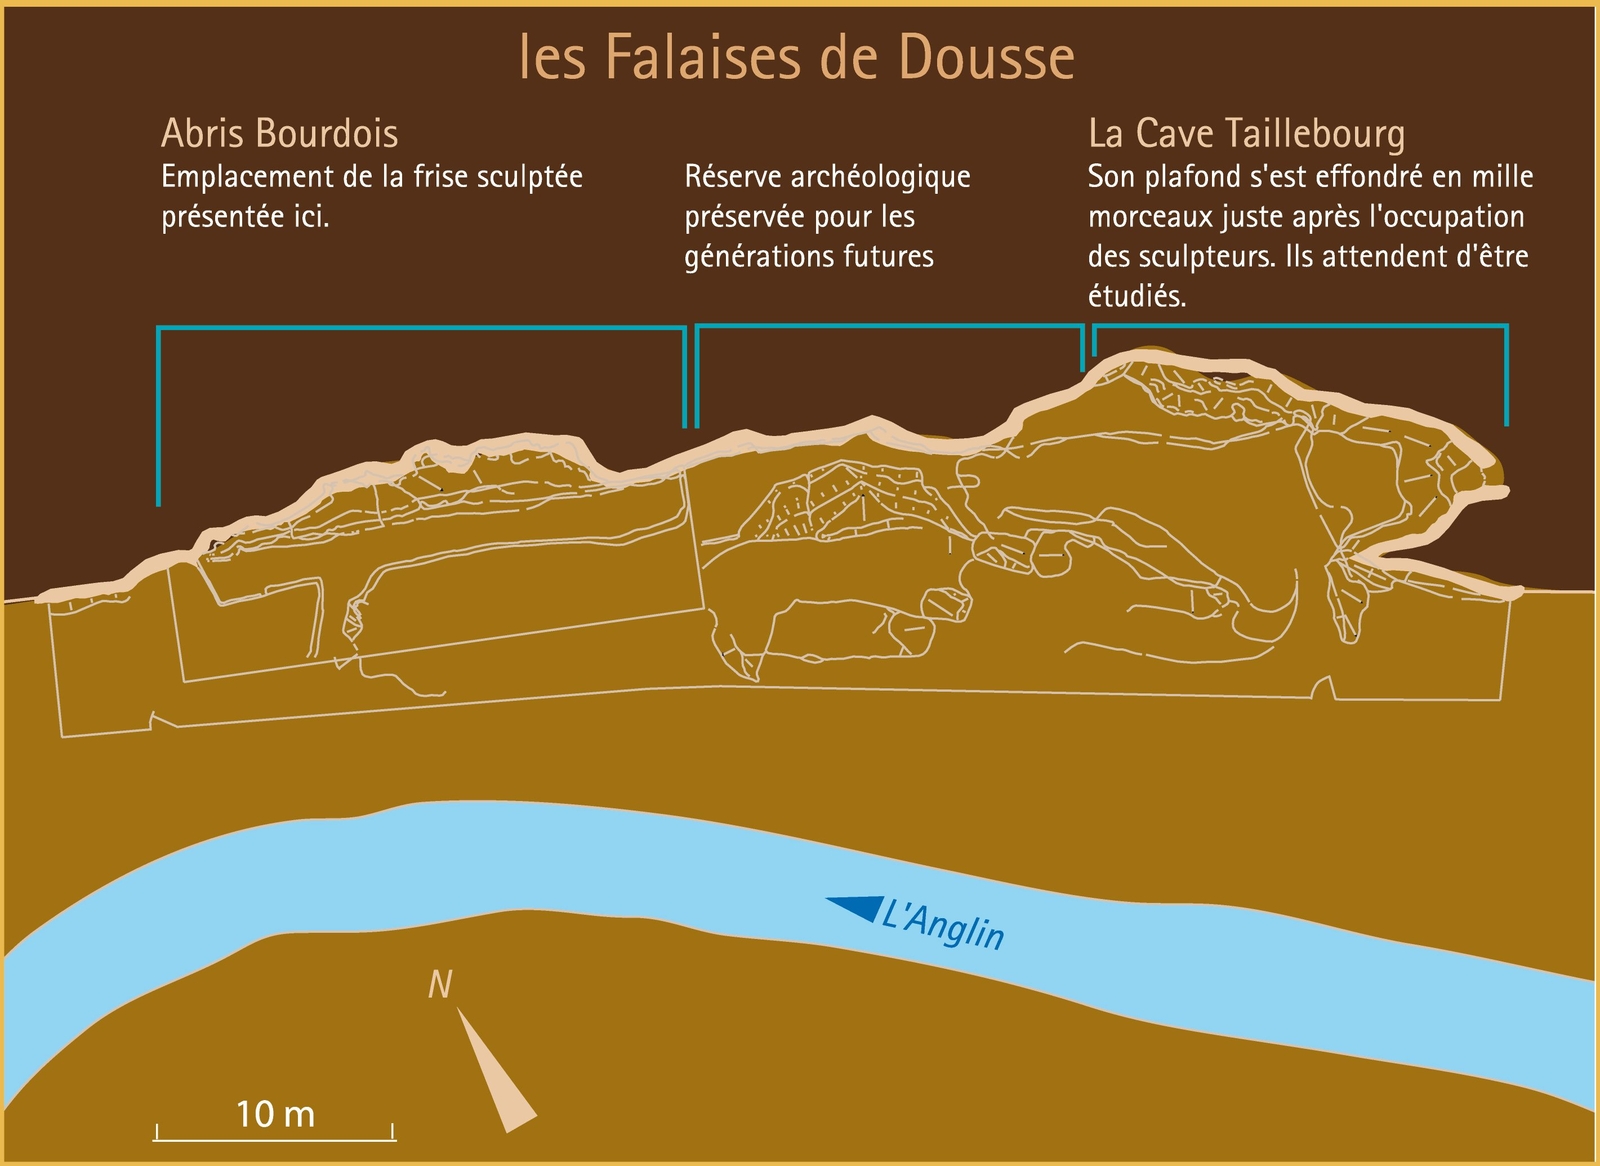 Les falaises de Dousse